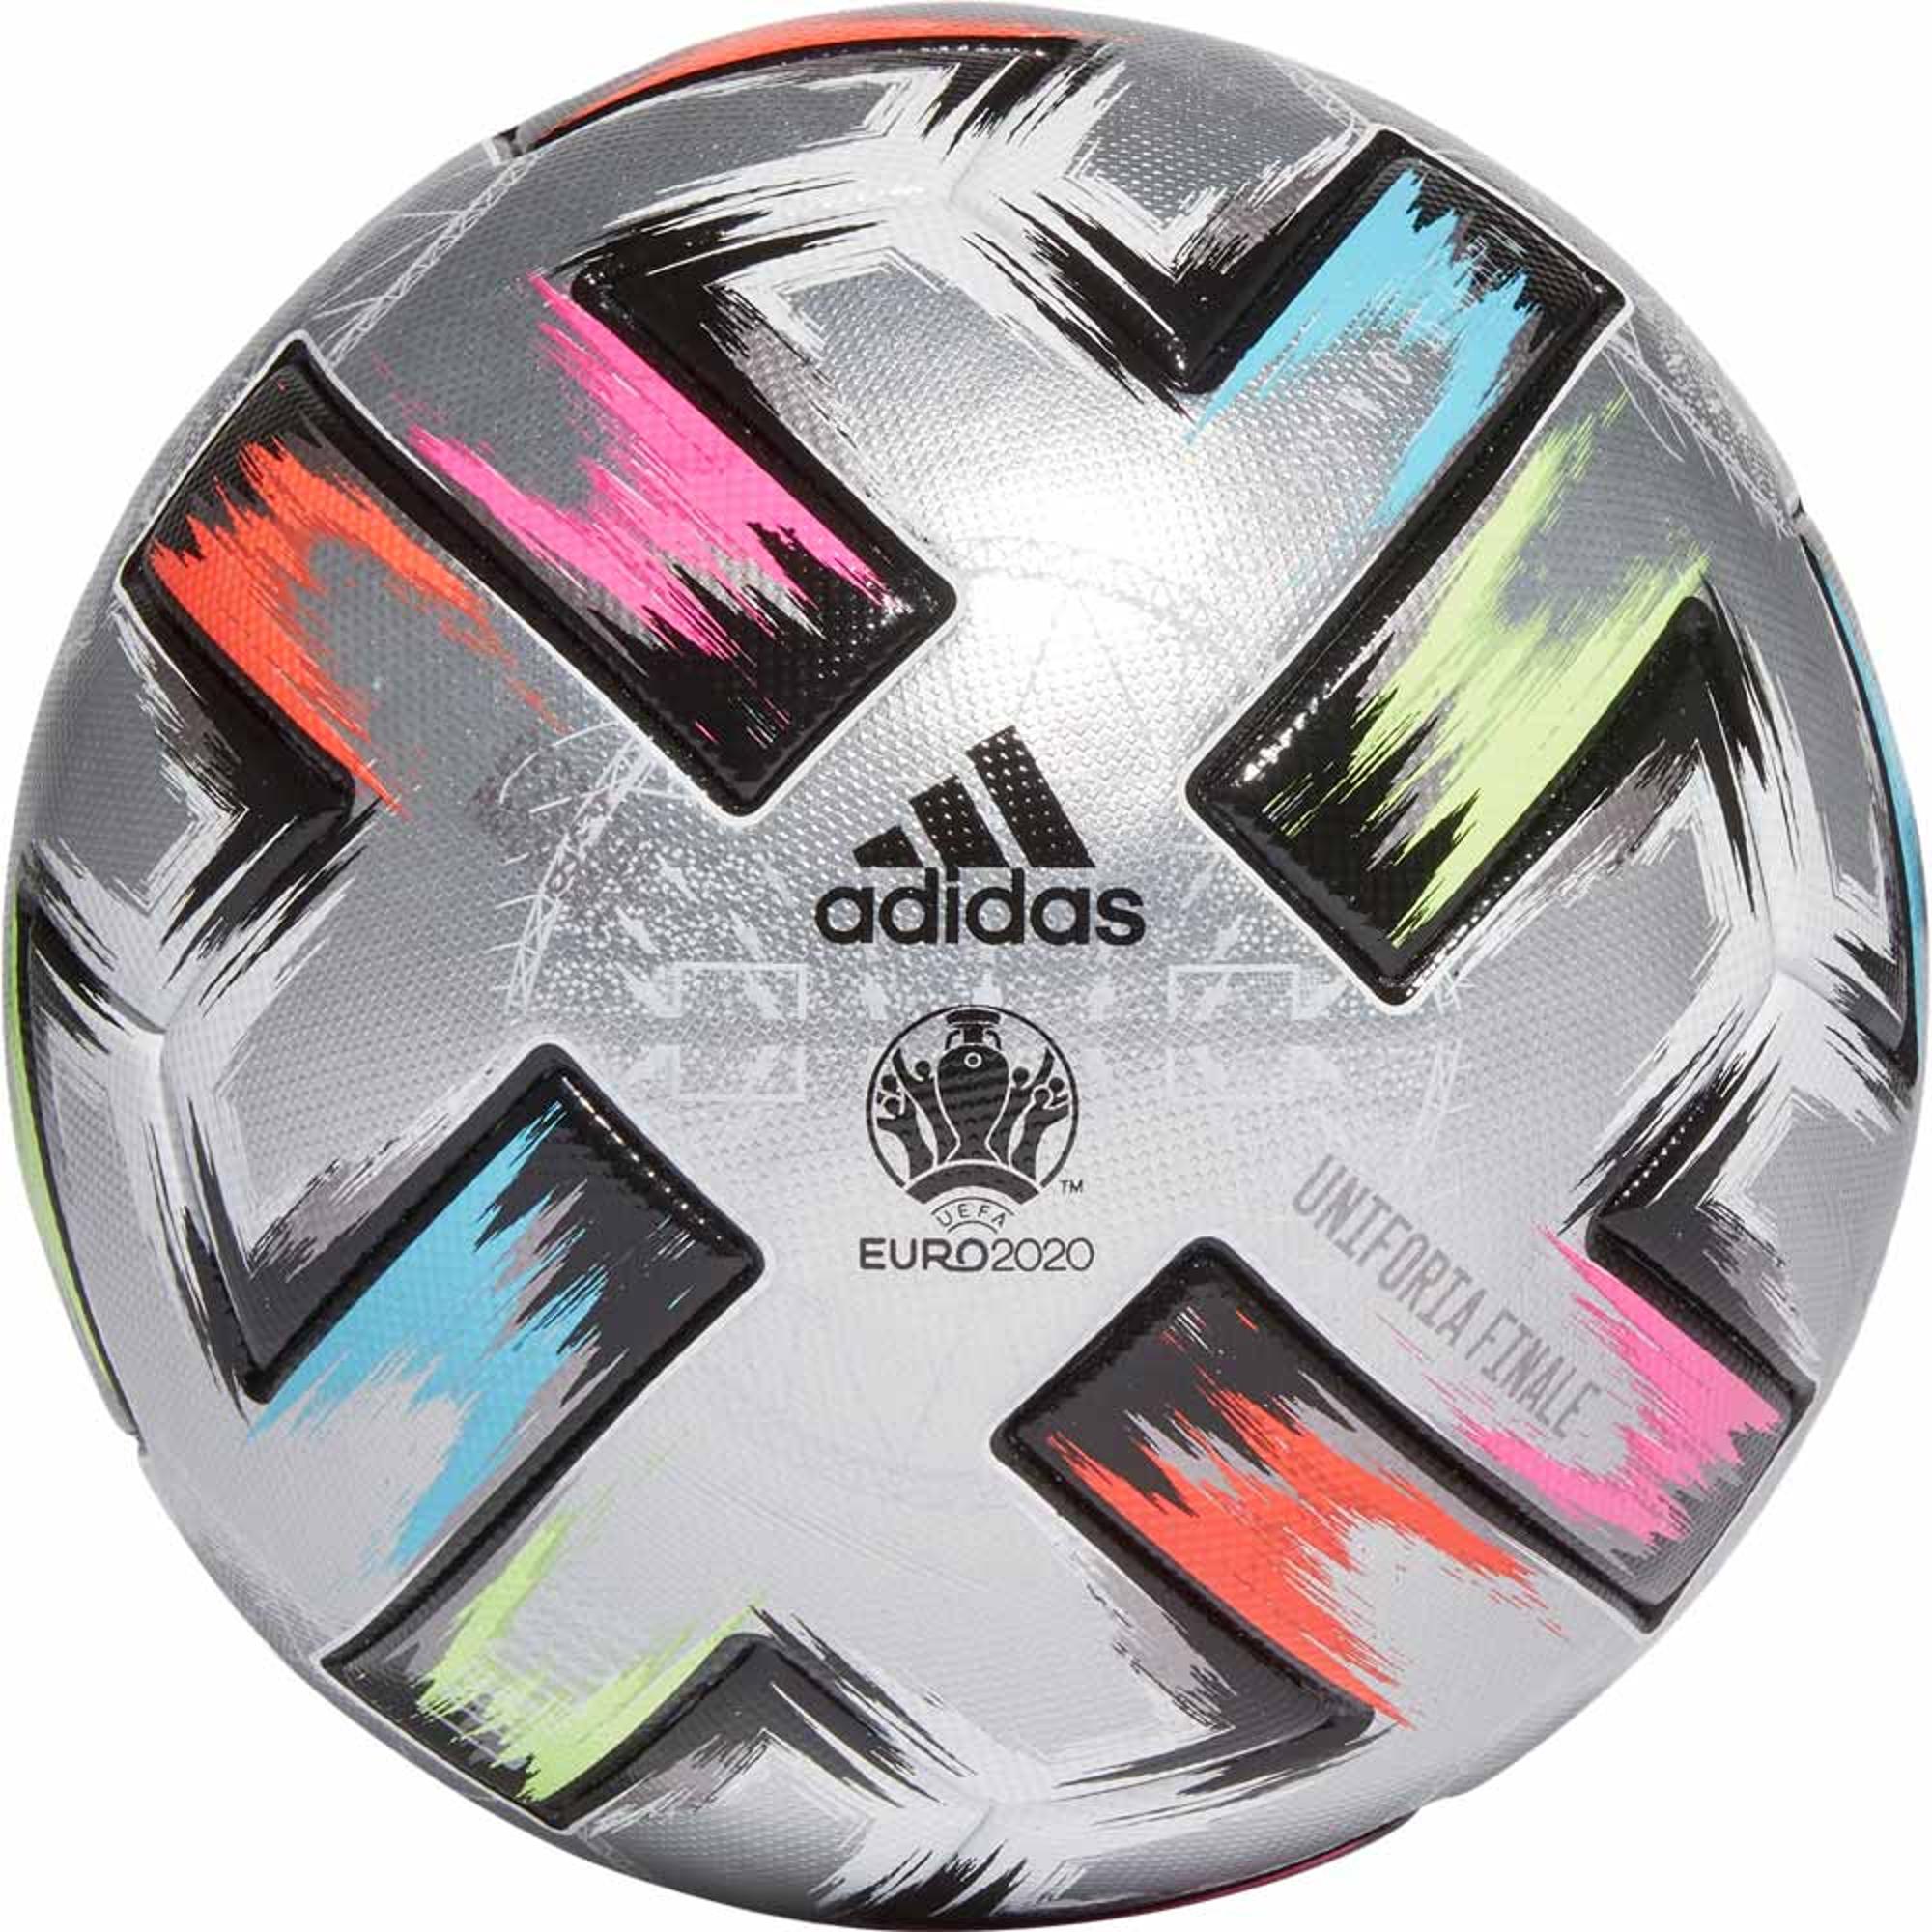 Adidas Uniforia Finale Pro Ball: The Soccer Corner The Soccer Corner